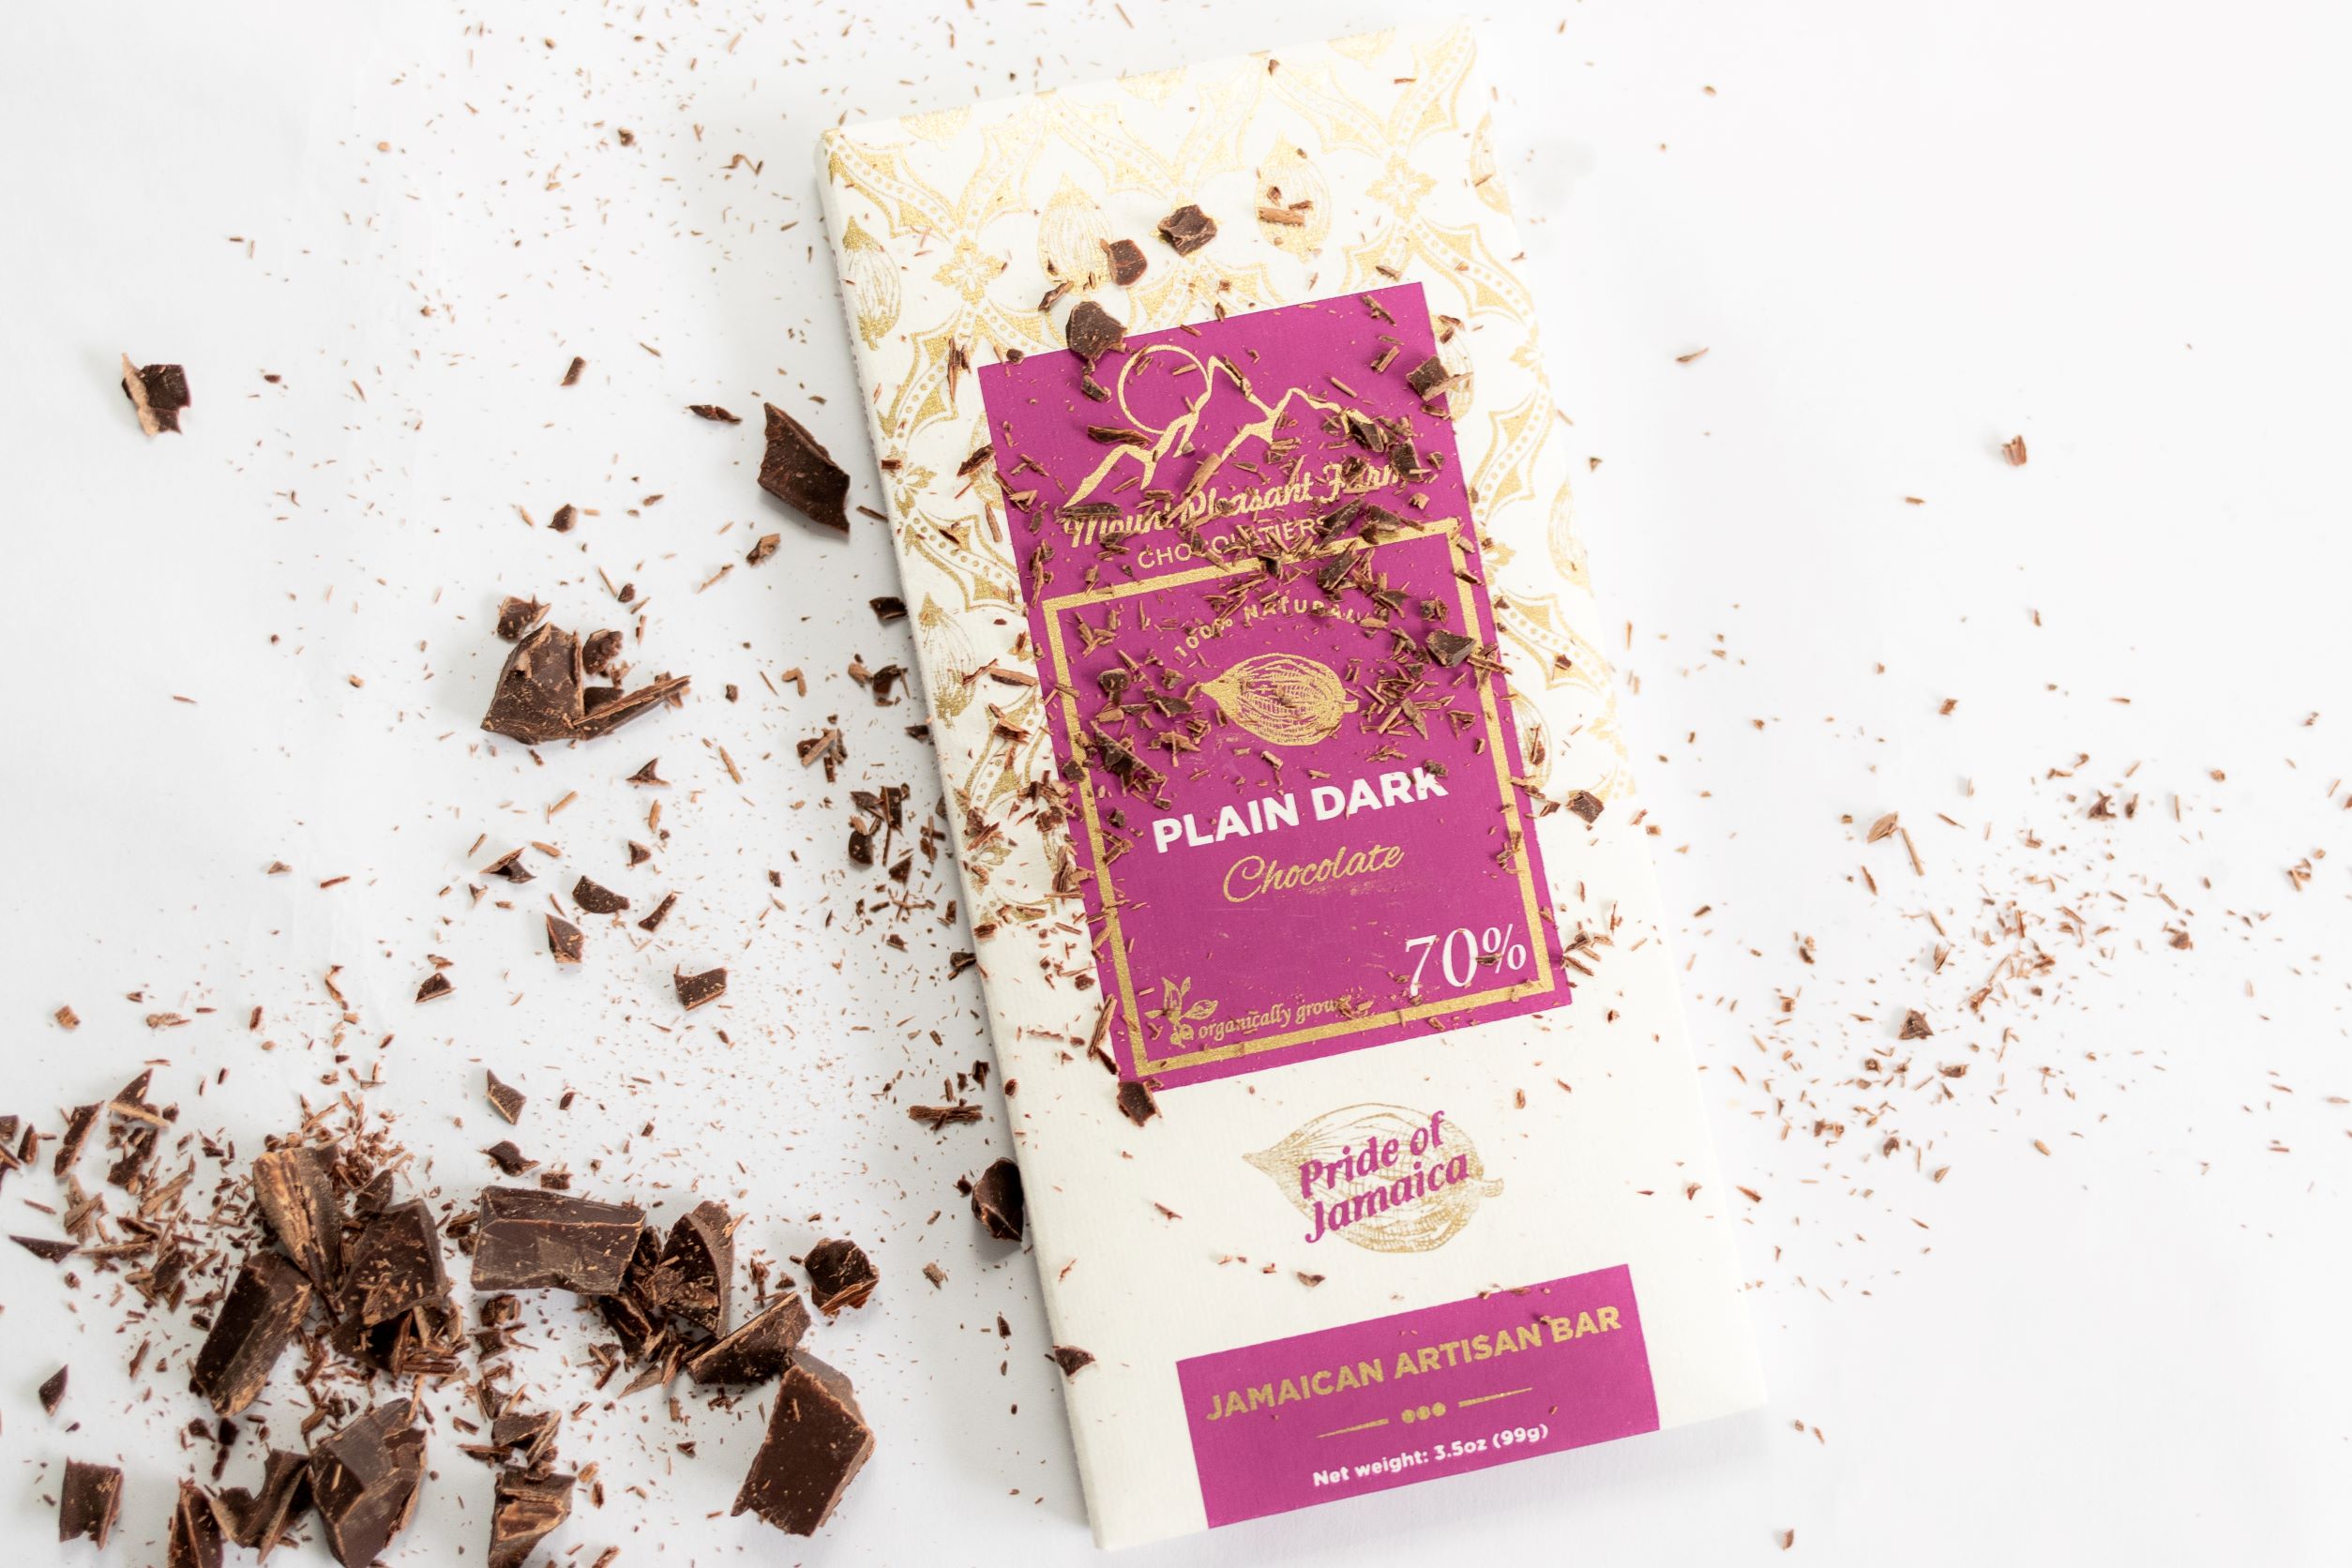 Artisanal 70% Dark Jamaican chocolate bars